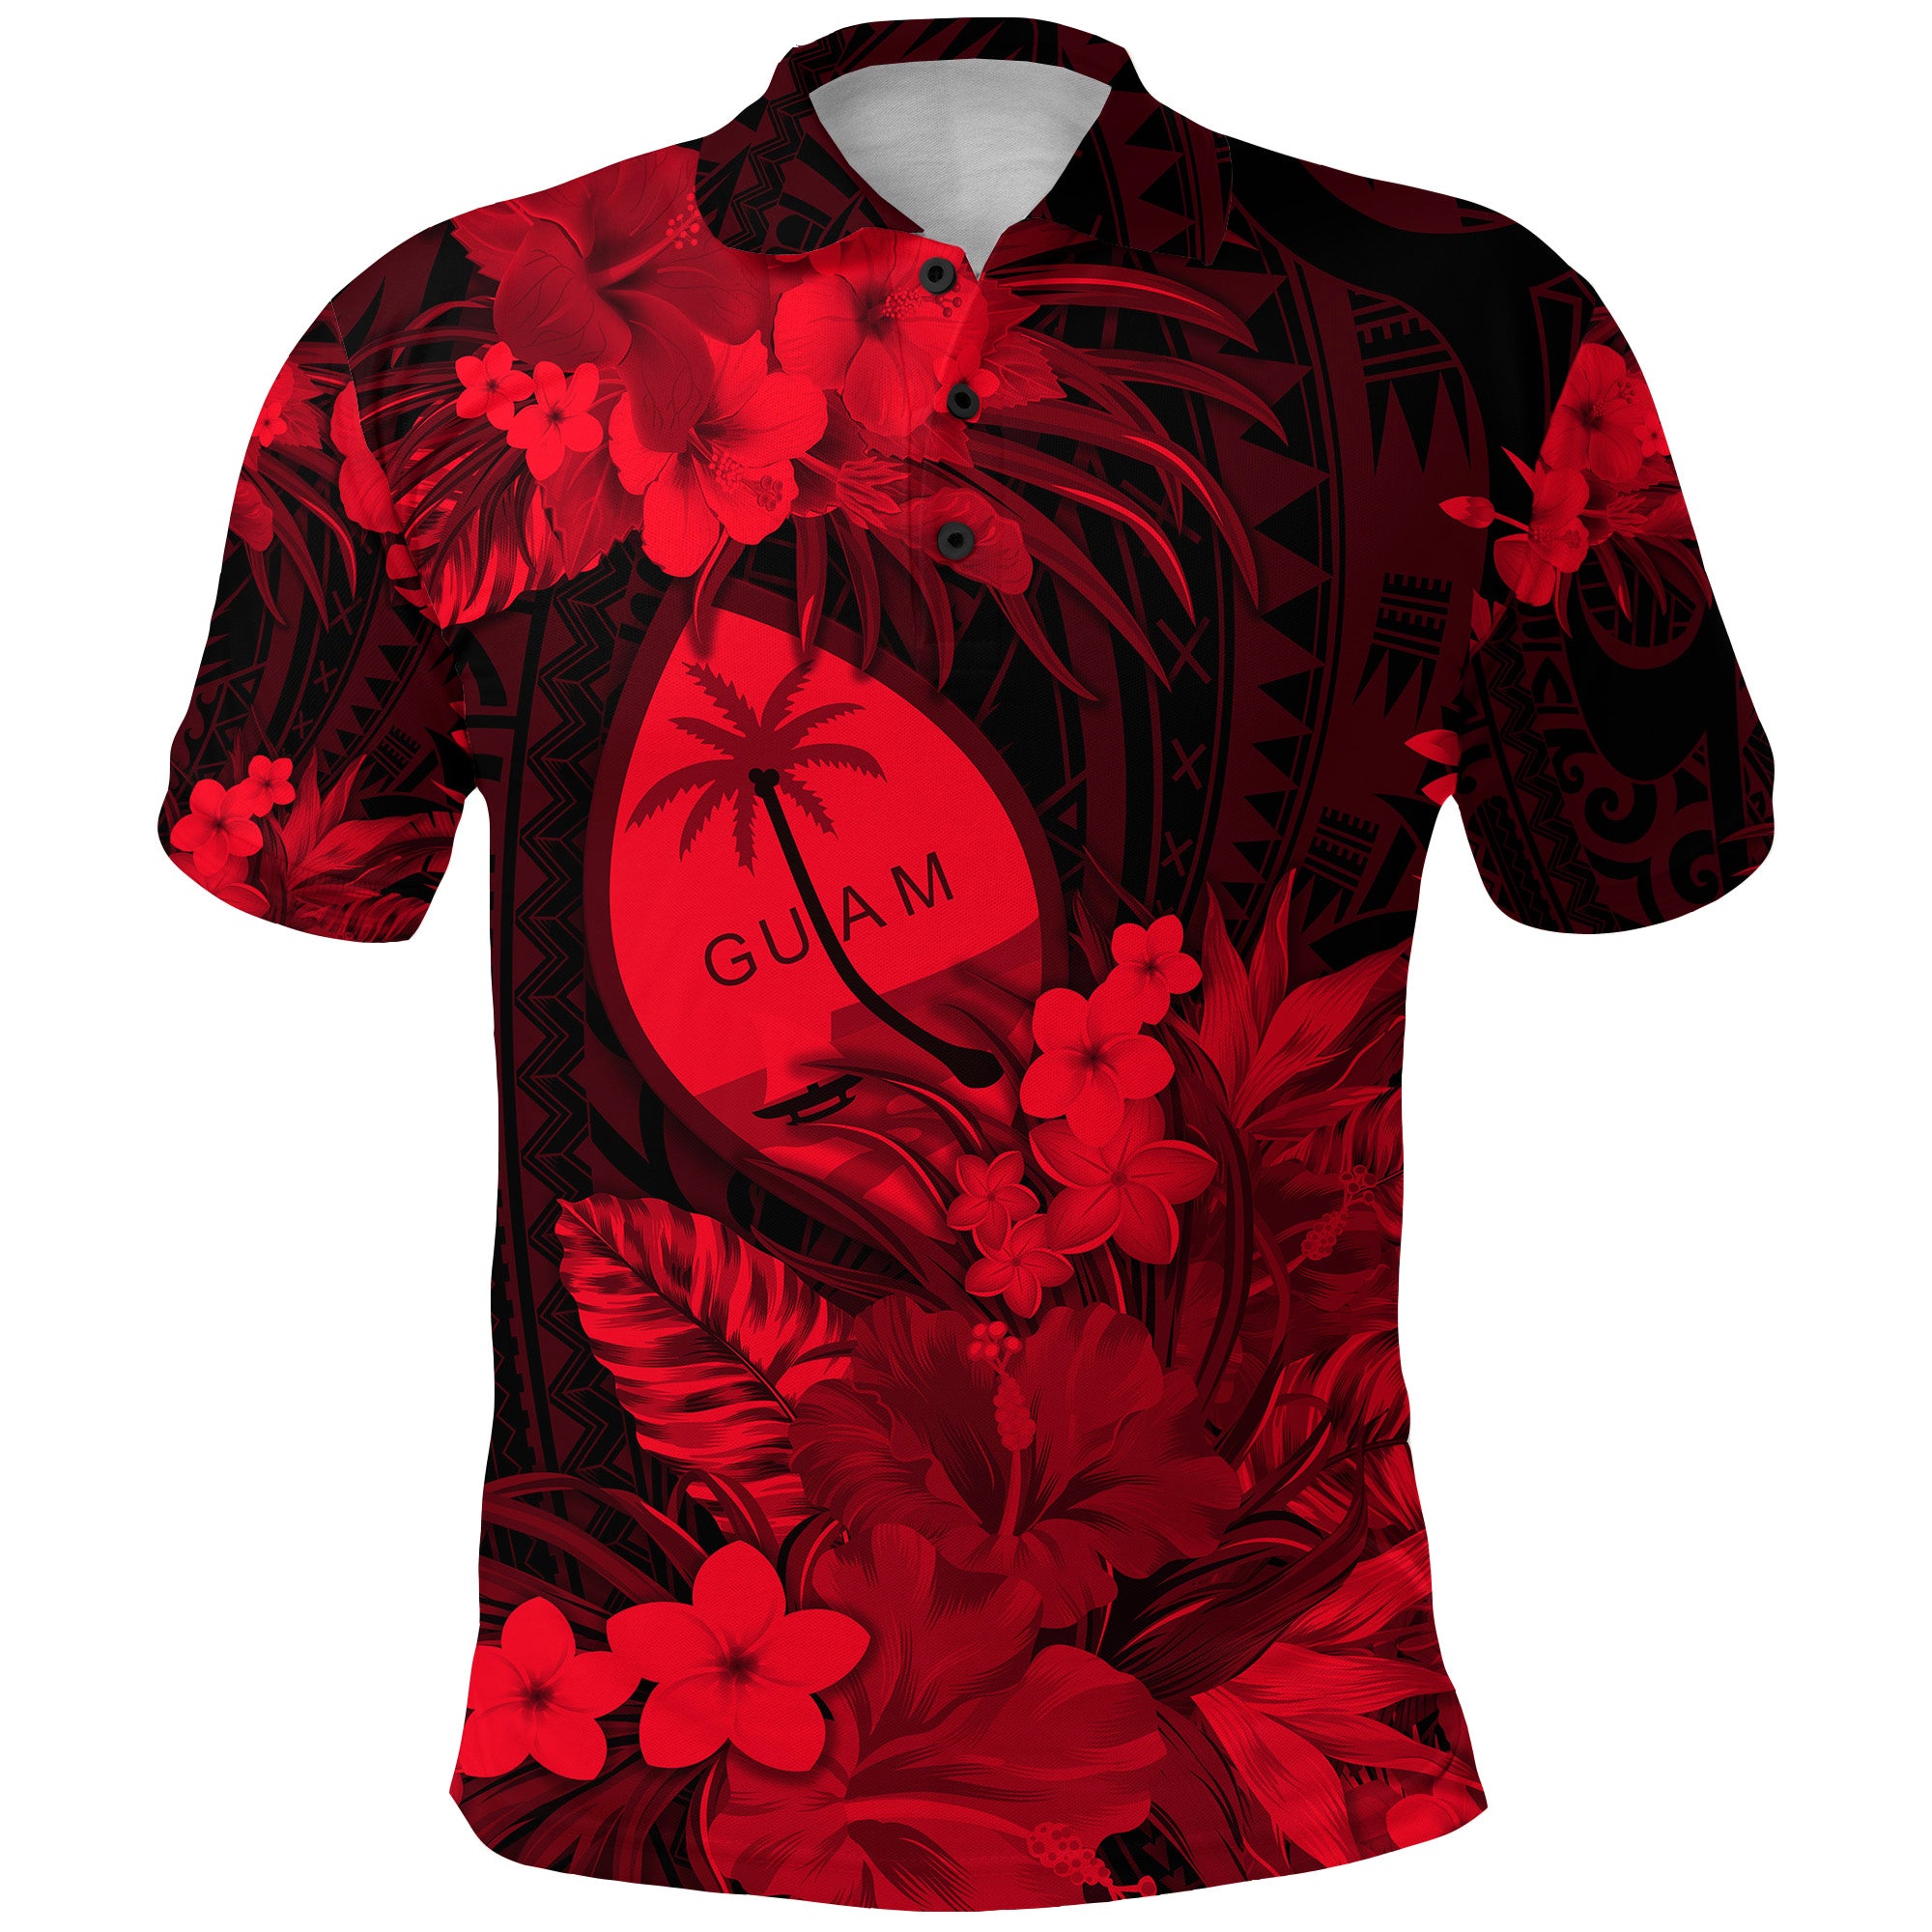 Guam Polynesian Polo Shirt Tropical Flowers Red LT8 - Polynesian Pride